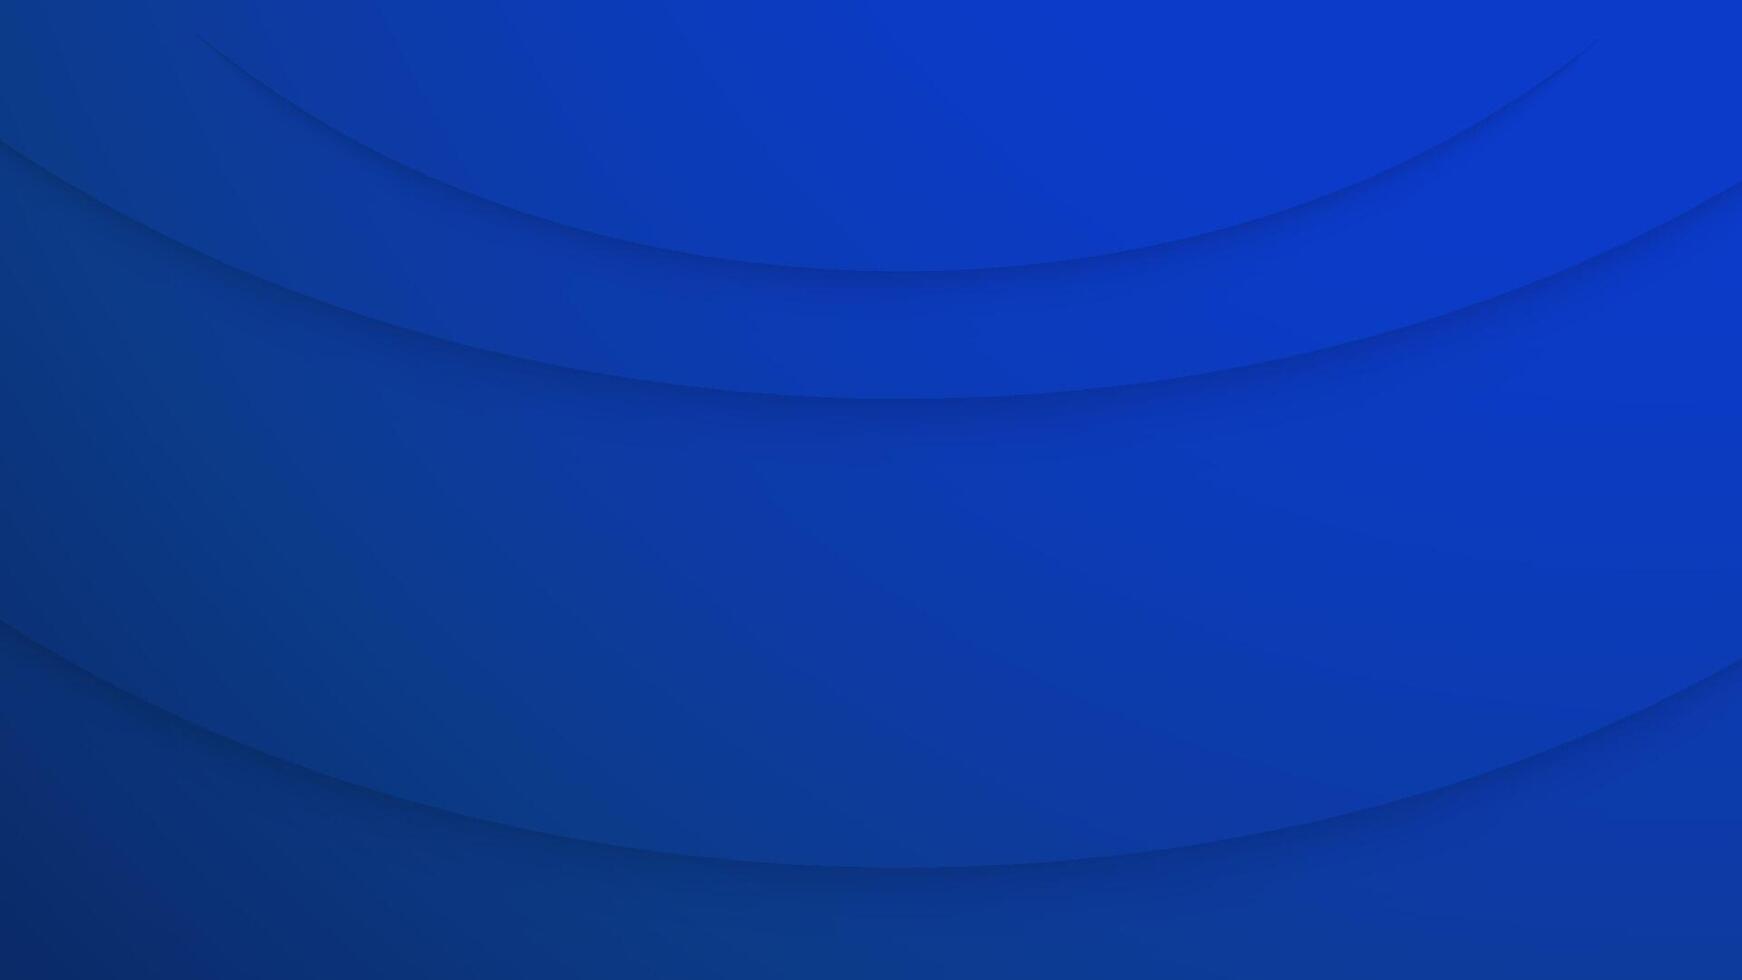 abstract Koninklijk blauw achtergrond met schaduw kromme. sjabloon ontwerp voor landen bladzijde, ui, bedrijf presentatie, uitnodiging kaart, omslag. illustratie met kopiëren ruimte. vector